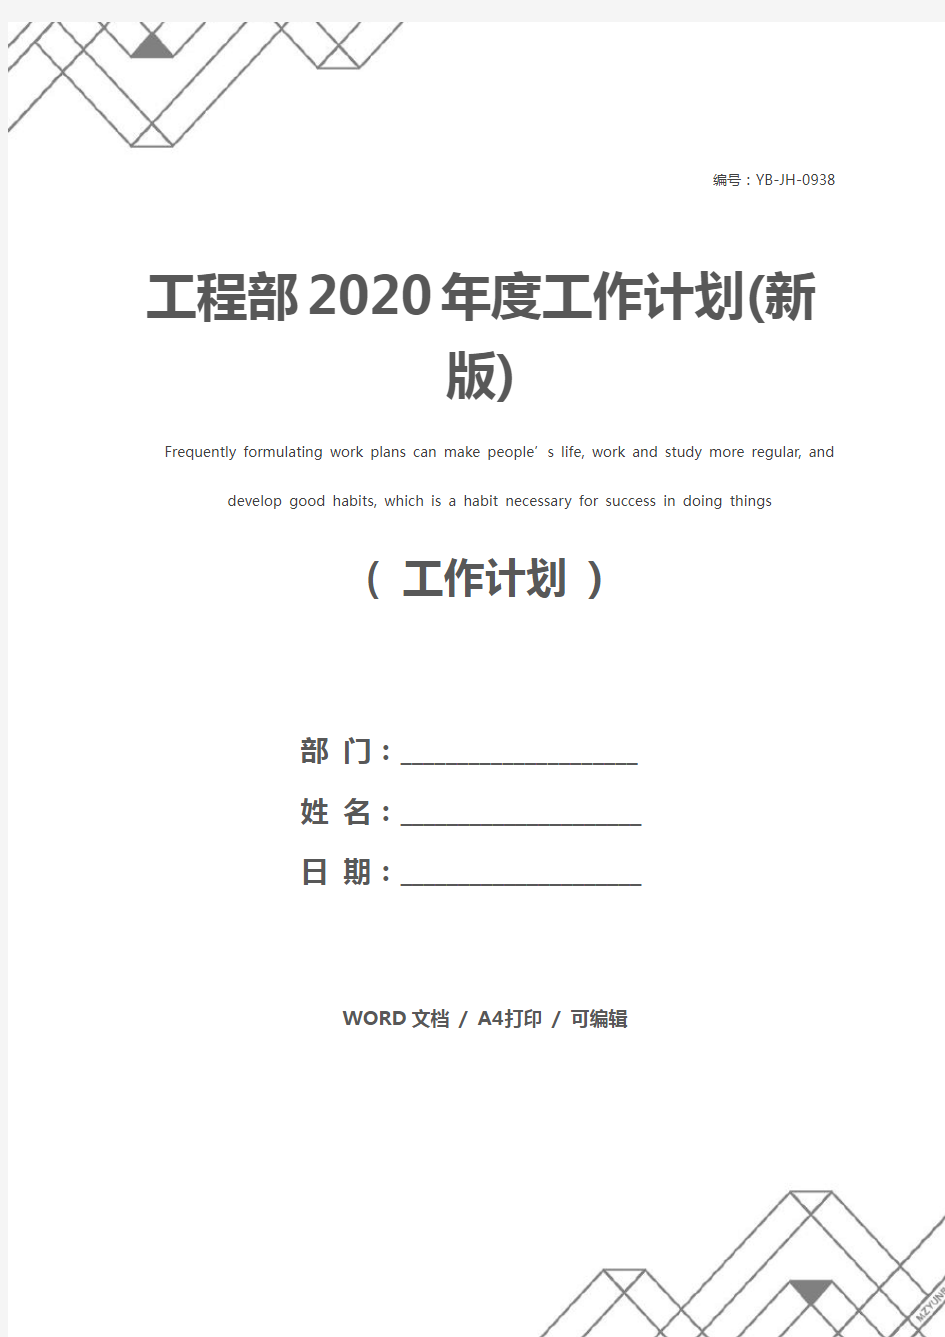 工程部2020年度工作计划(新版)